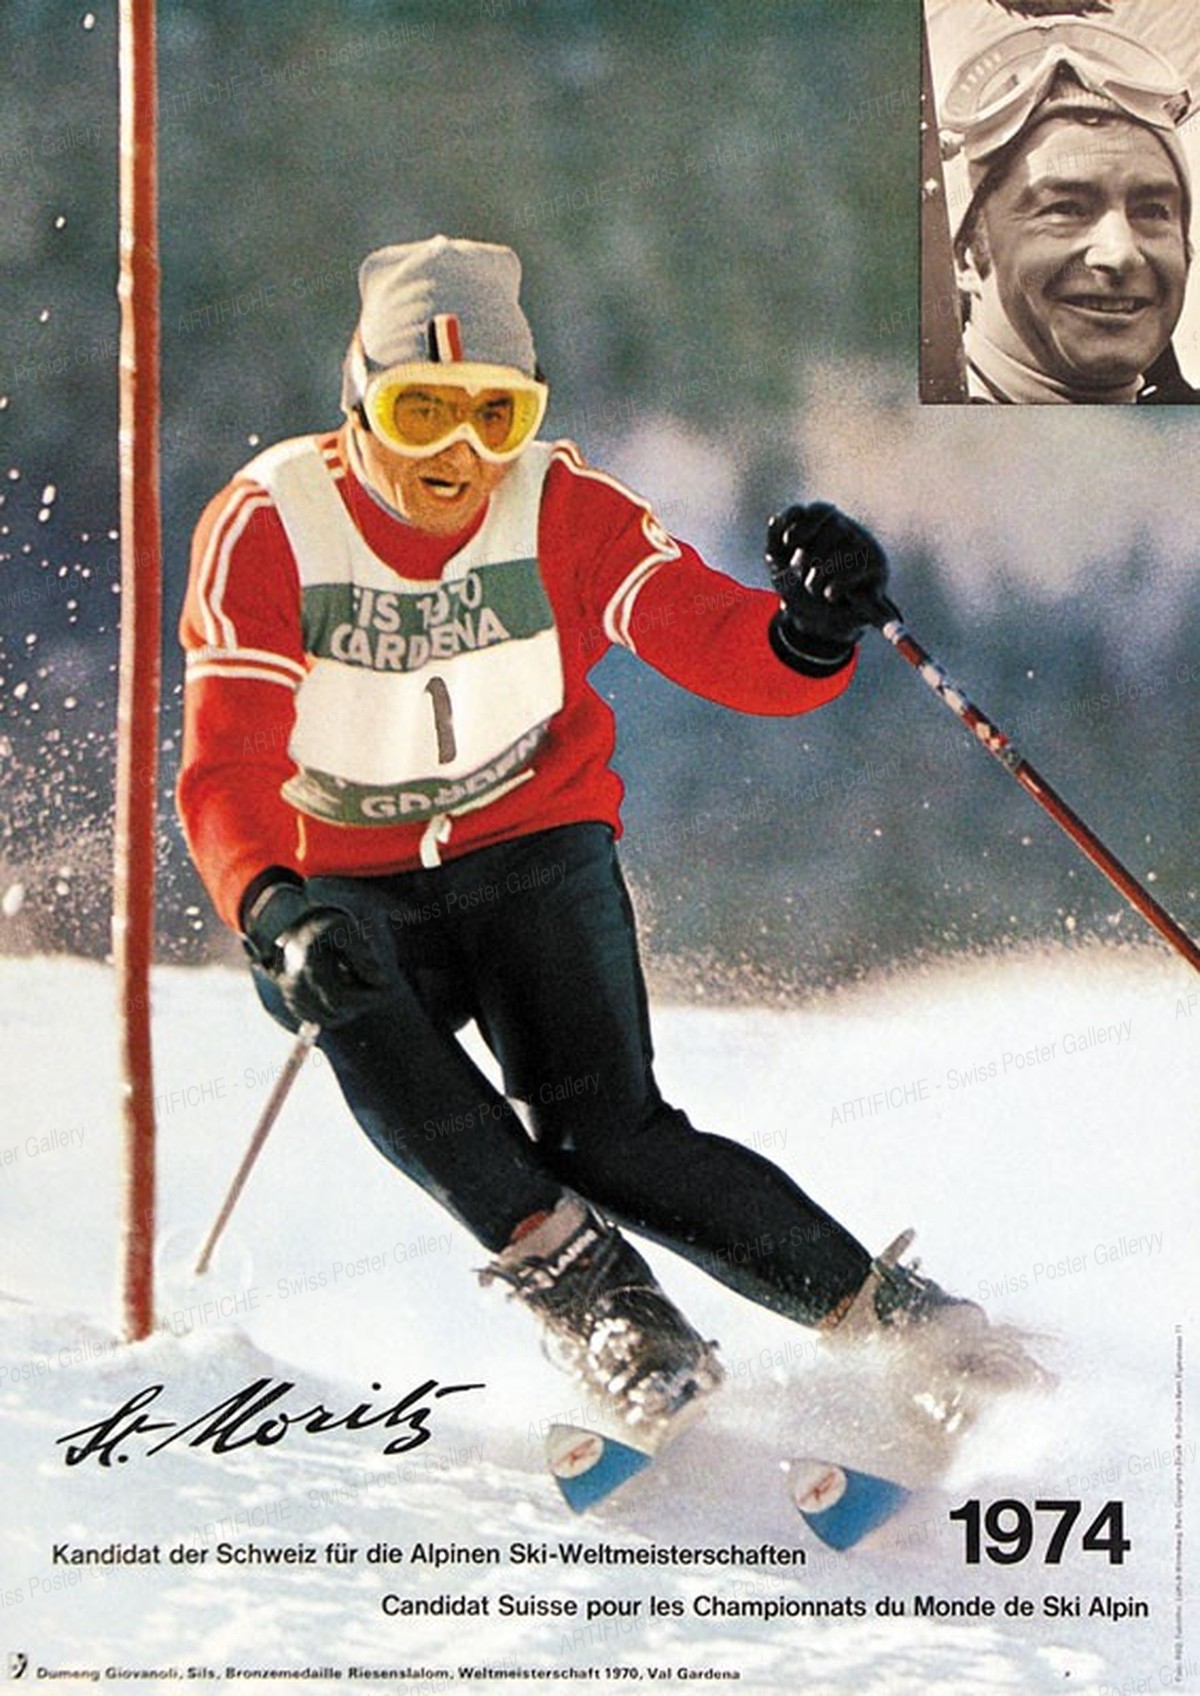 St. Moritz – Alpine Ski-Weltmeisterschaften 1974, Nater